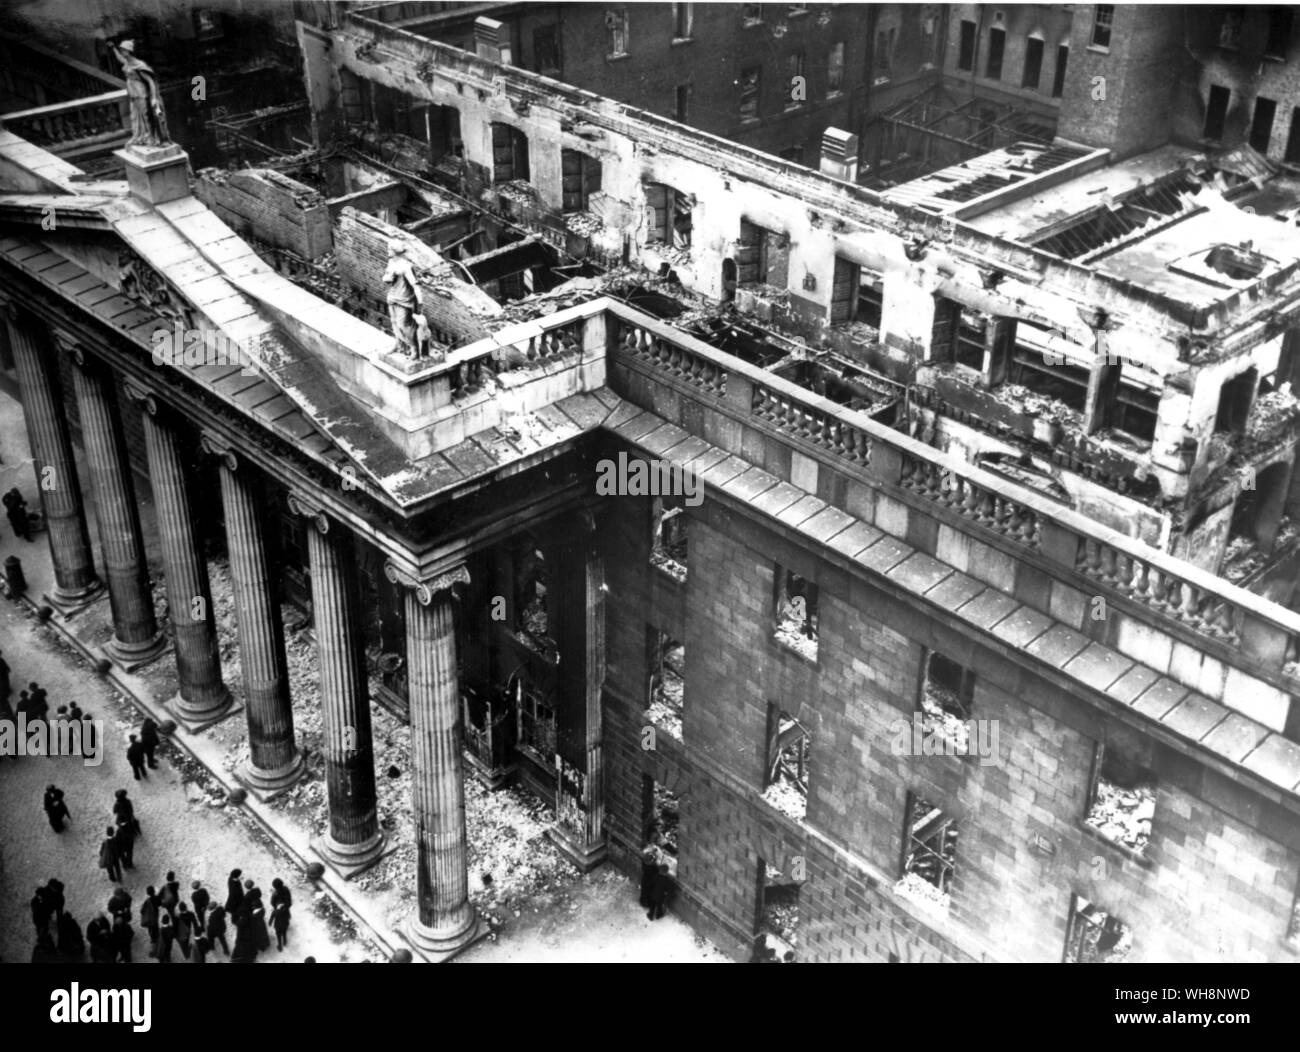 Les républicains irlandais se rebella contre la domination britannique en Irlande en 1916 Pâques . Bureau de poste de Dublin - GPO - en ruines. Il avait été le siège du QG des forces rebelles irlandais Banque D'Images